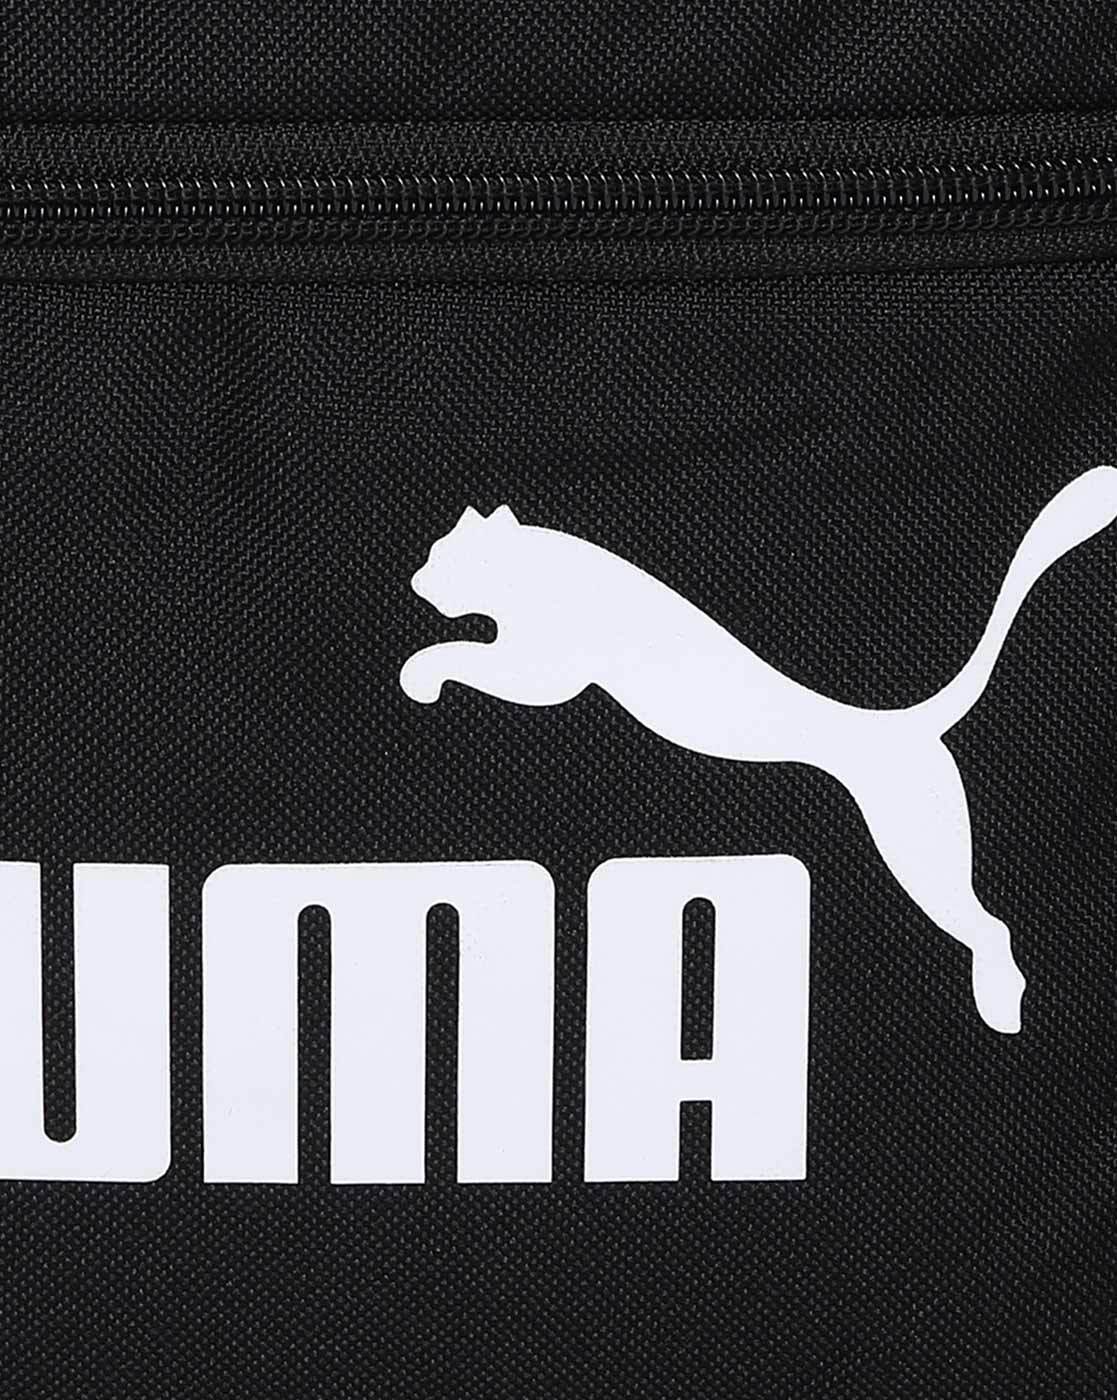 Puma Logo design vector illustration - Stock Illustration [39129275] - PIXTA